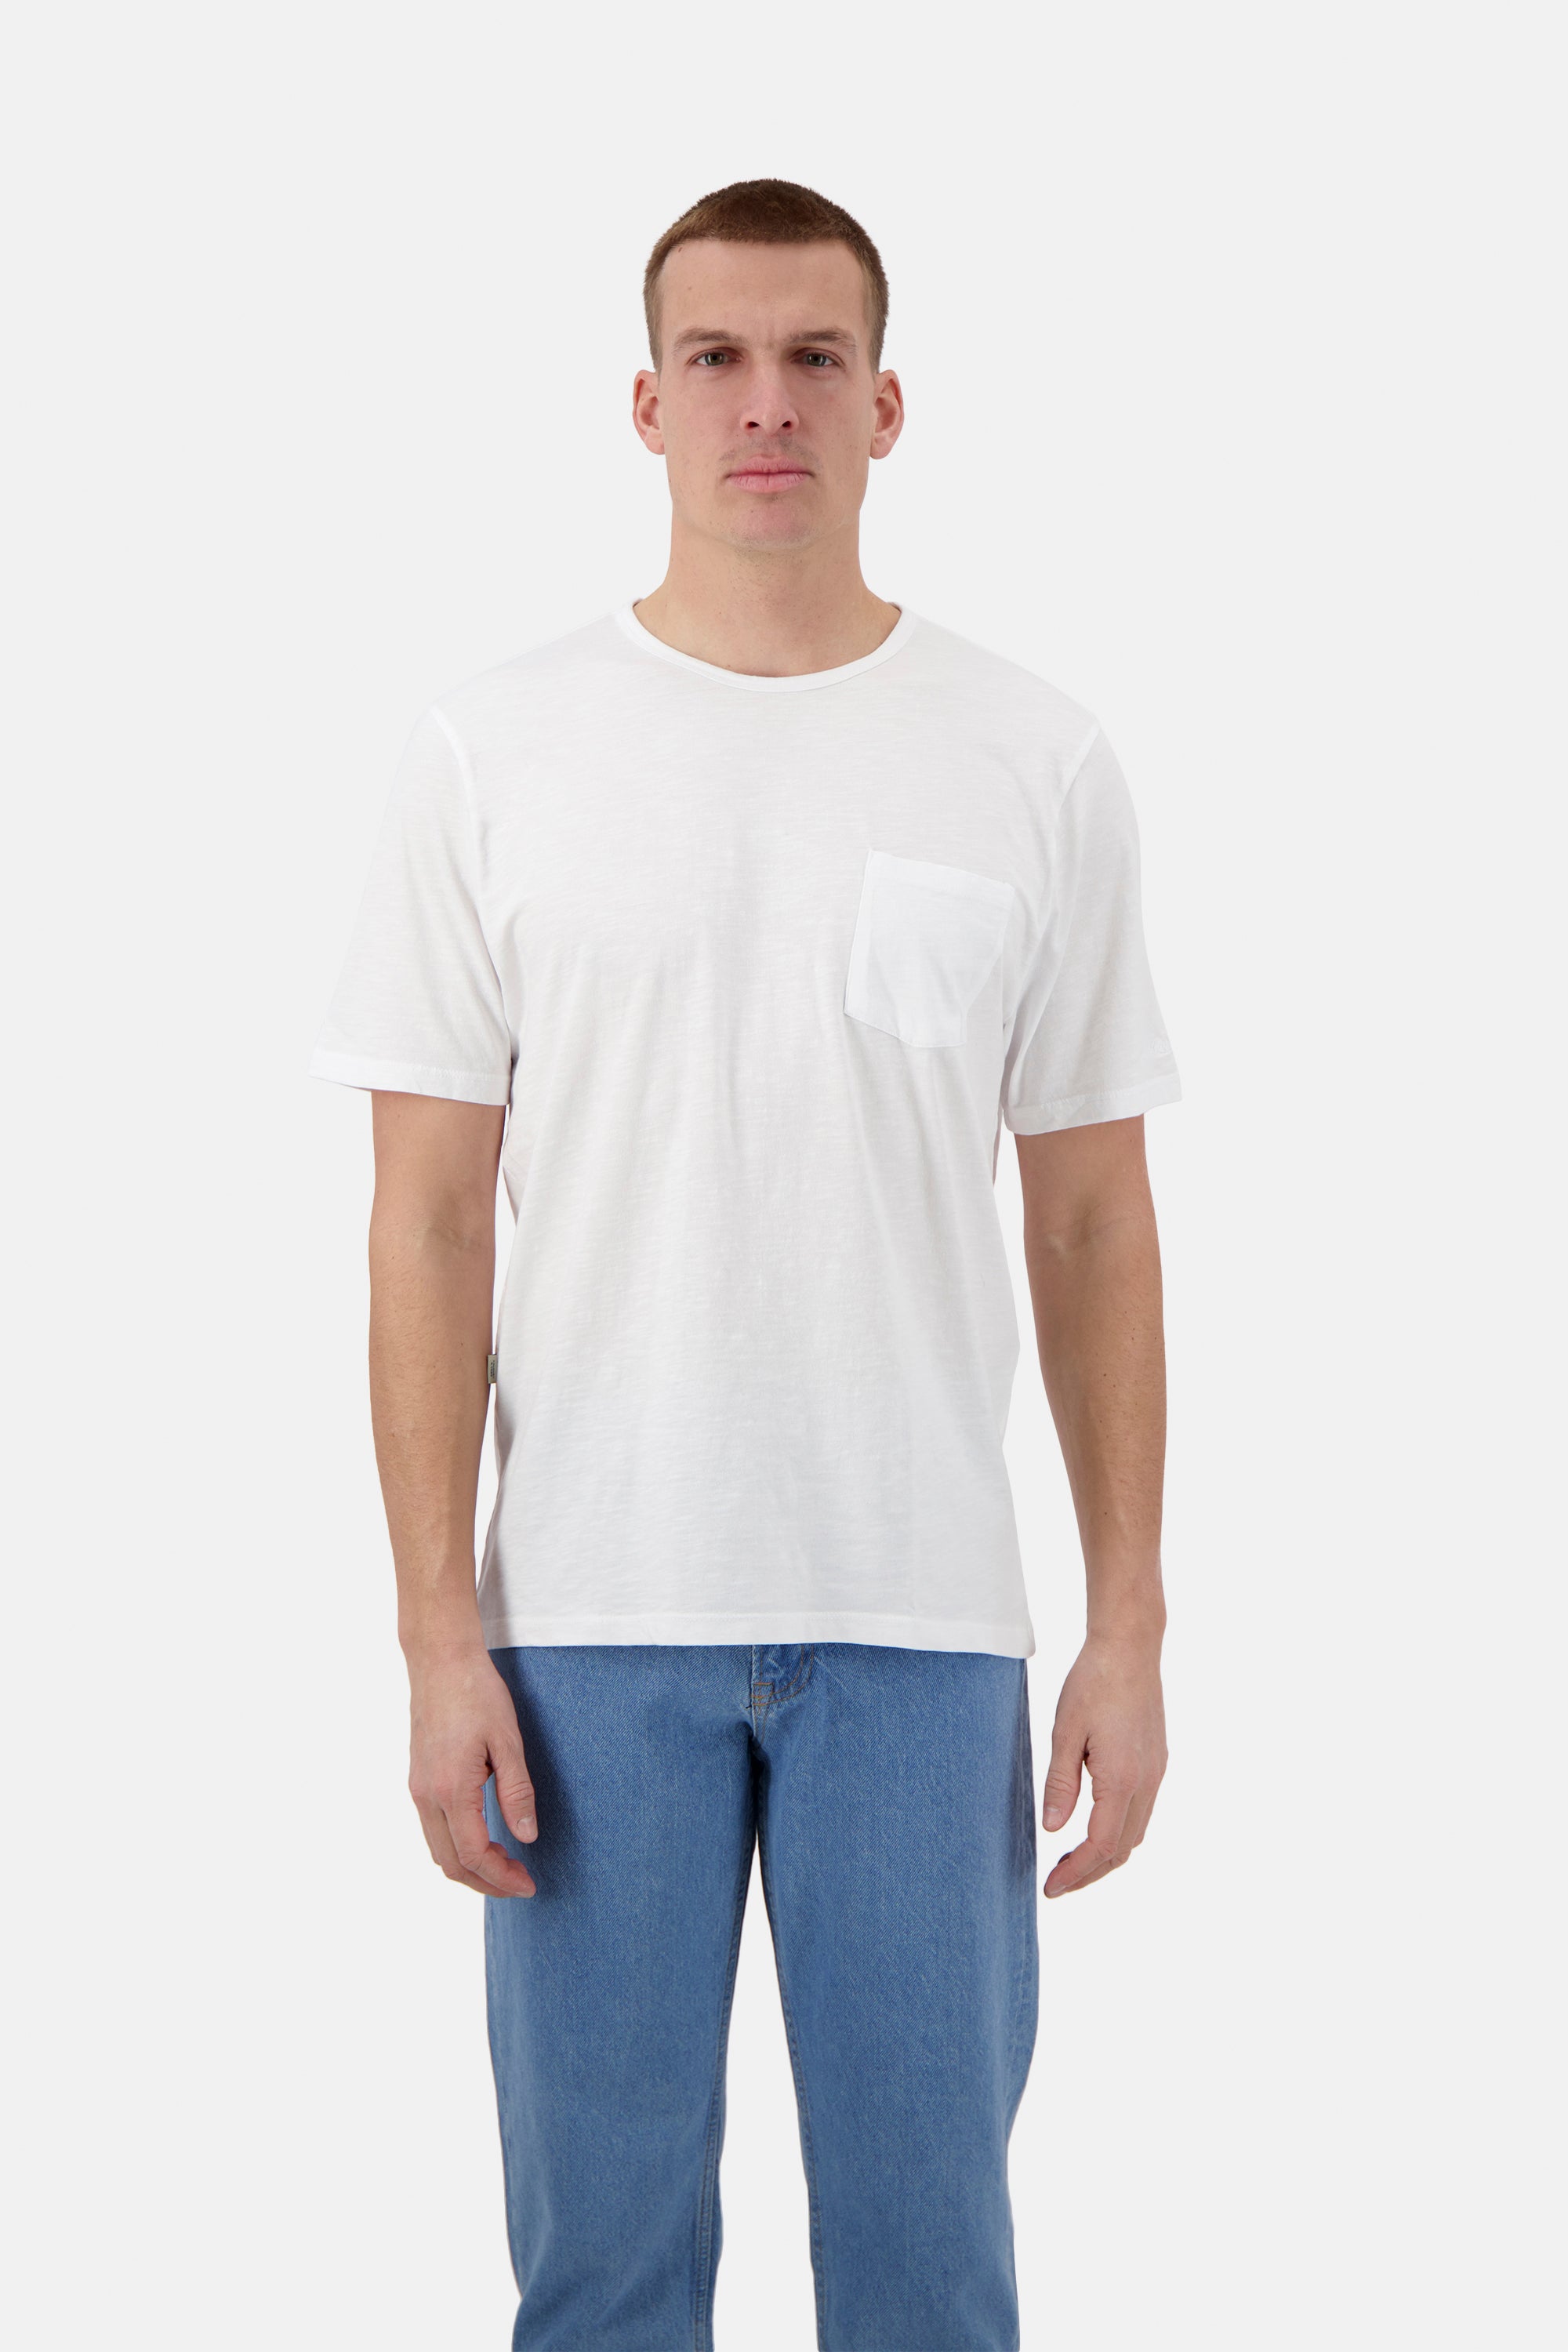 Herren T-Shirt Slub, weiß, 100% Baumwolle von Colours & Sons